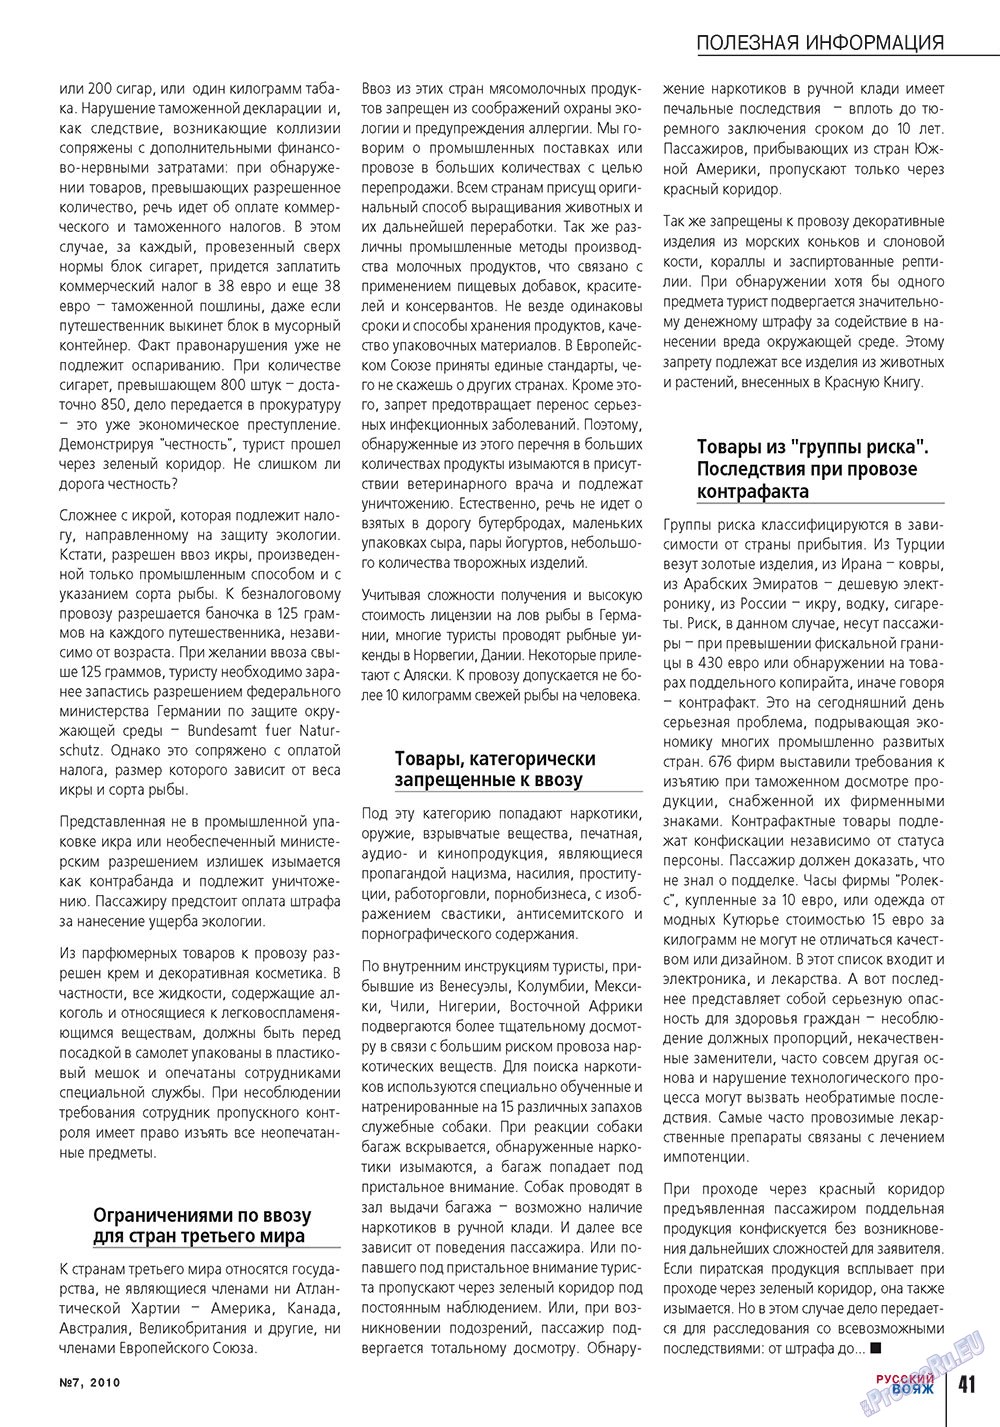 Русский вояж (журнал). 2010 год, номер 7, стр. 41